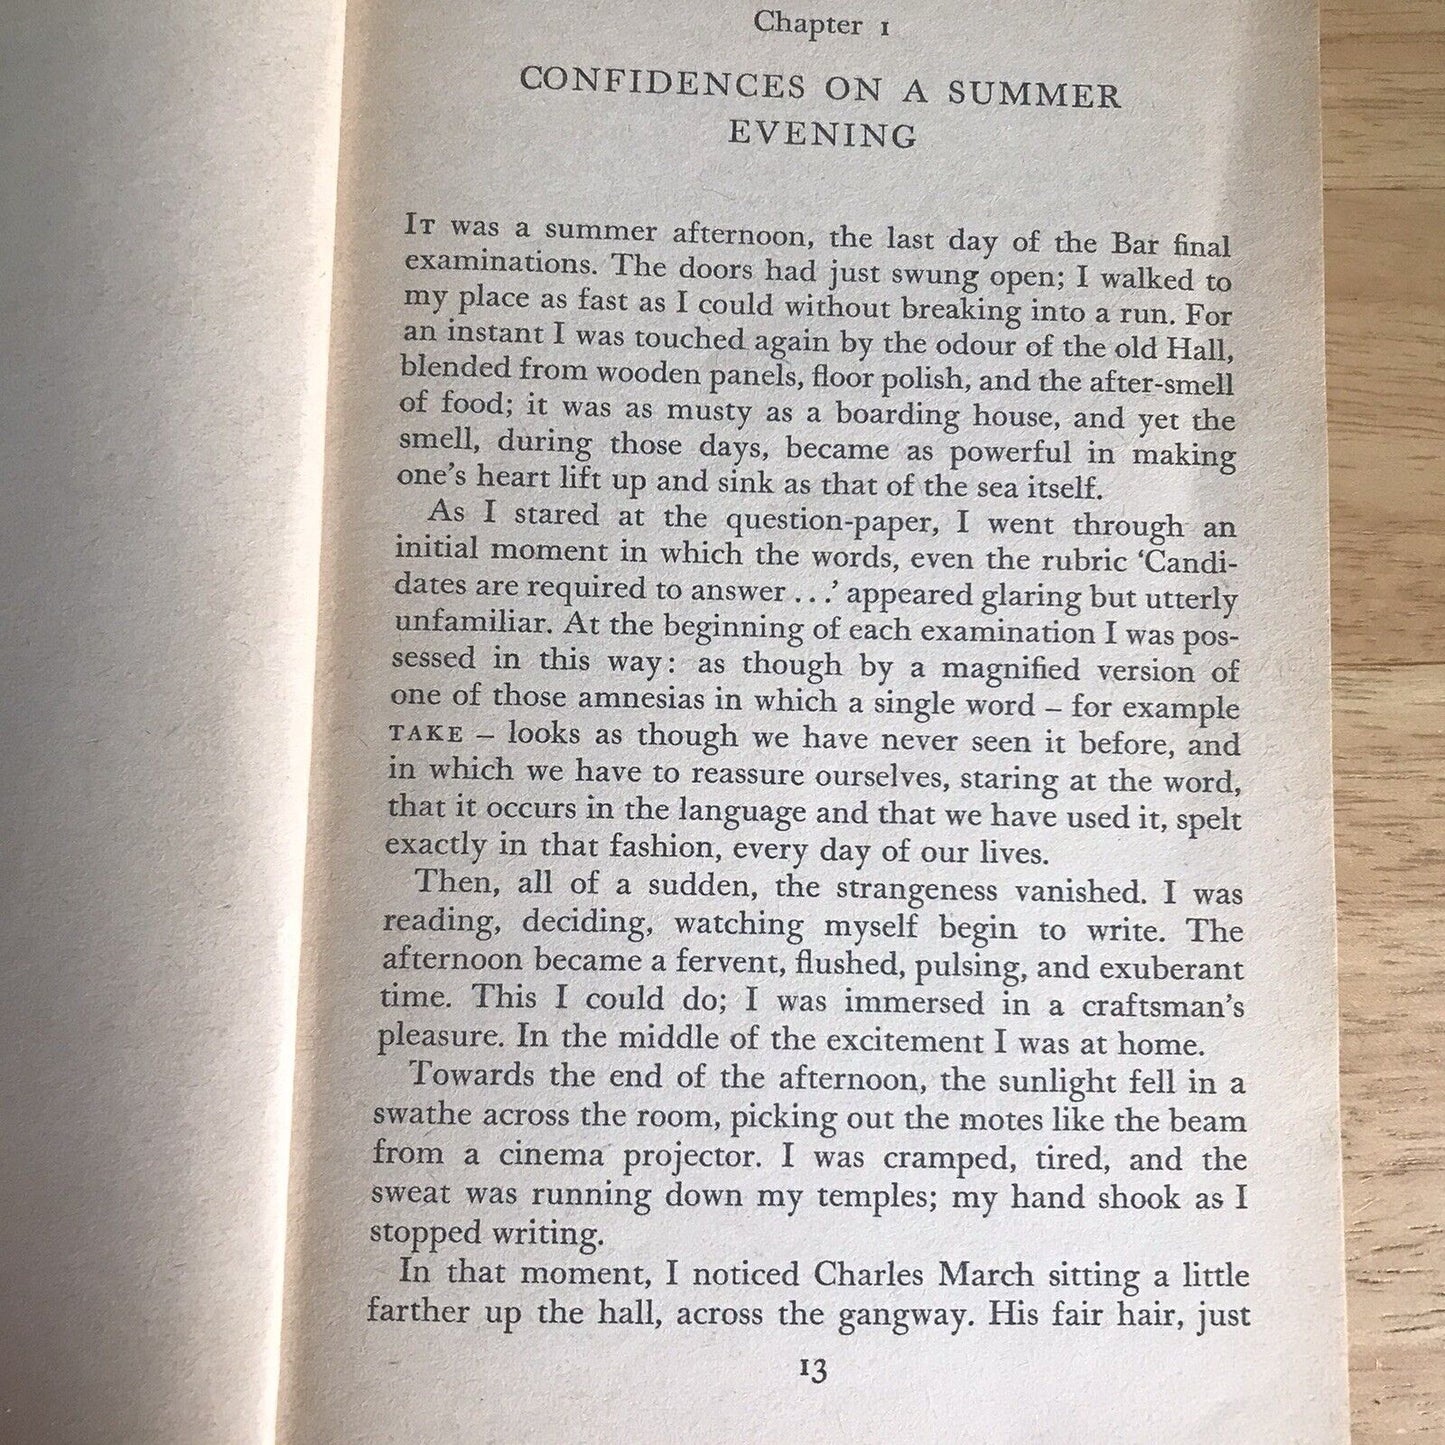 1962 Das Gewissen der Reichen – CP Snow (Penguin Books)